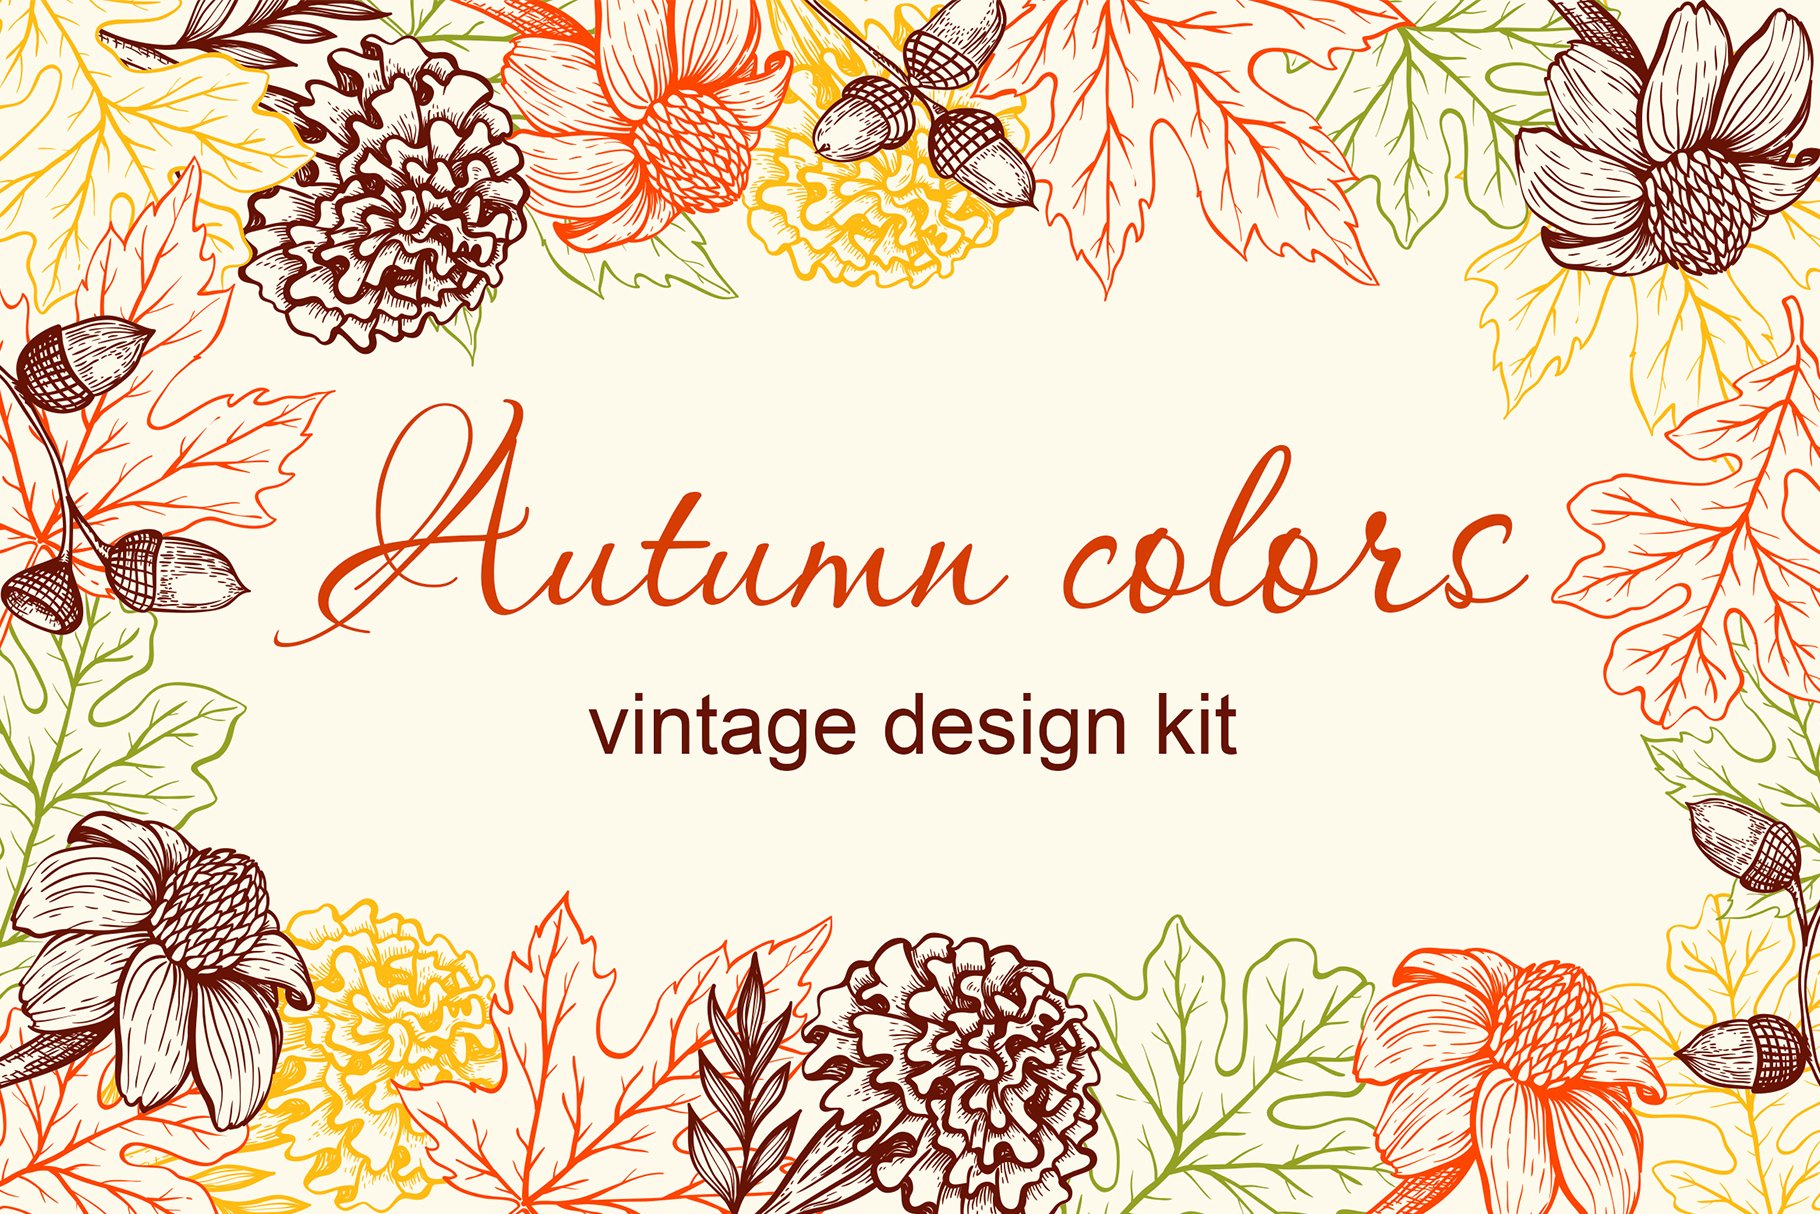 Autumn Colors Vintage Design Kit cover image.